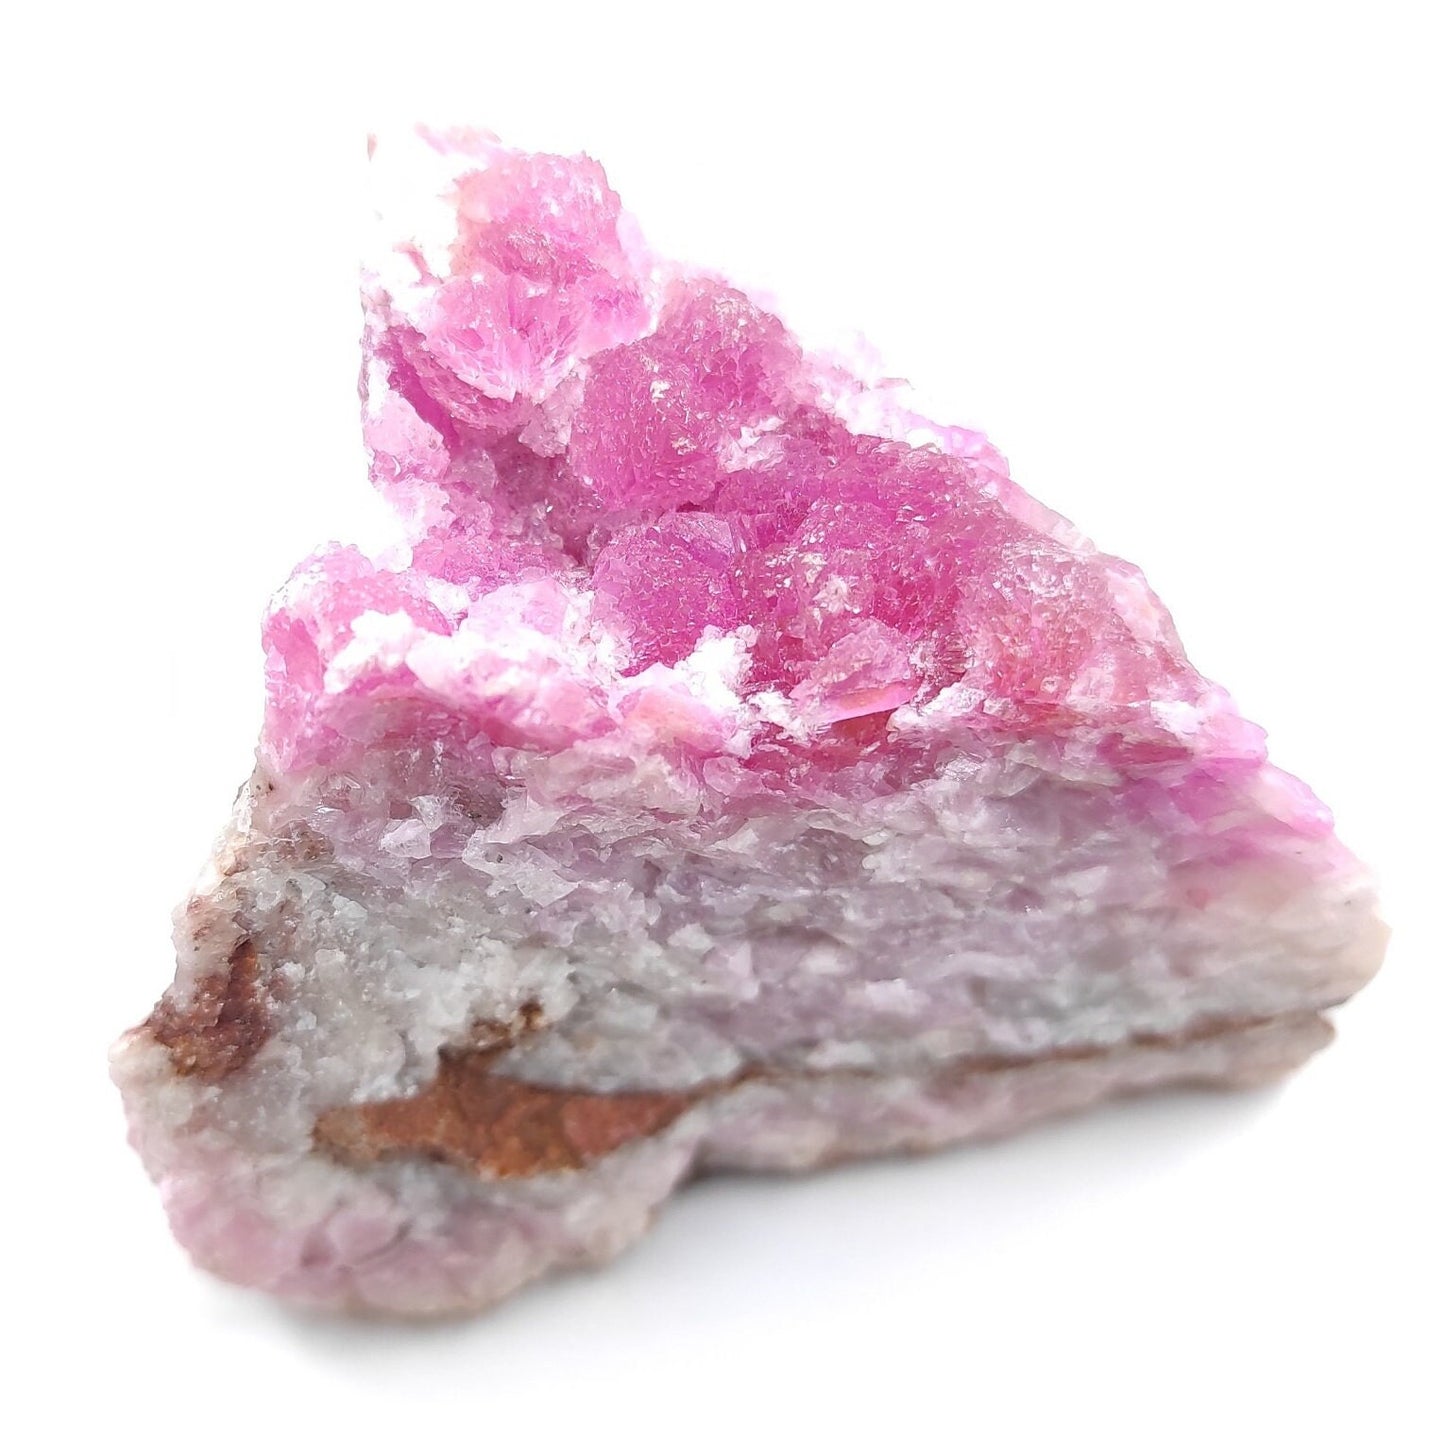 125g Cobalto Calcite - Pink Cobalt Calcite from Bou Azzer, Morocco - Salrose Stone - Cobaltocalcite Mineral Specimen - Pink Calcite Crystal